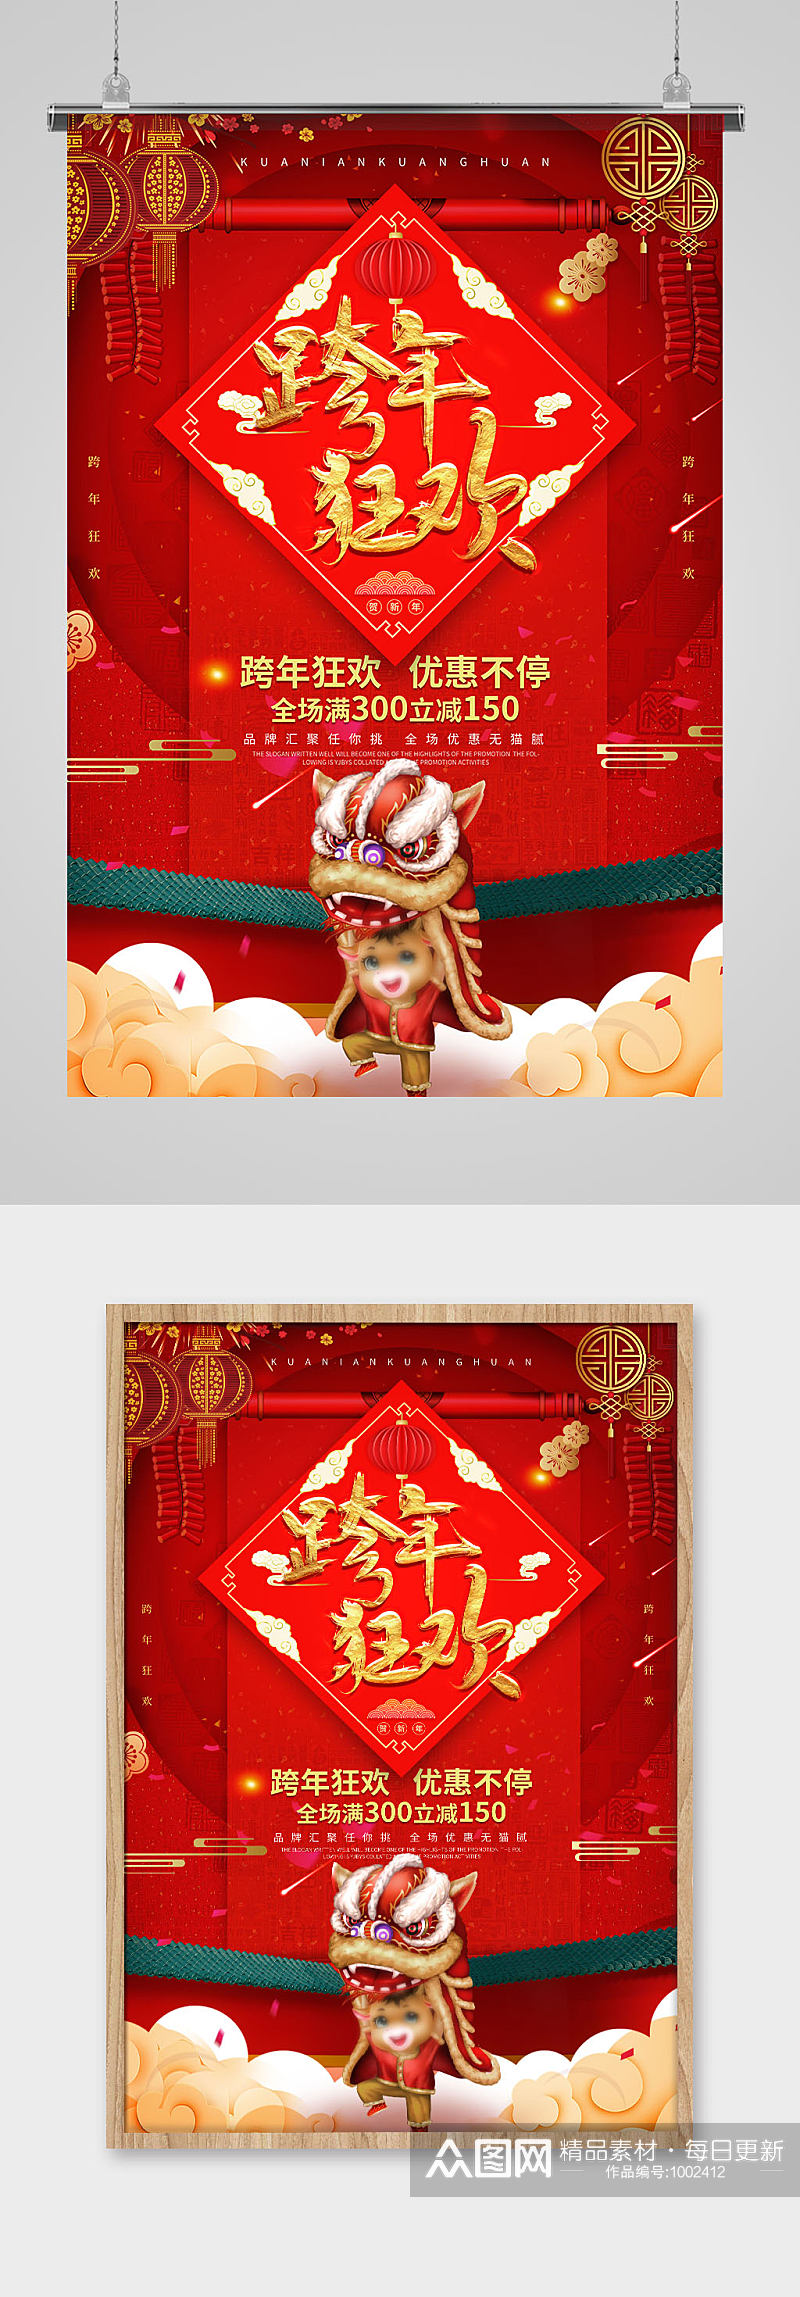 红色中国风跨年狂欢喜庆节日海报素材